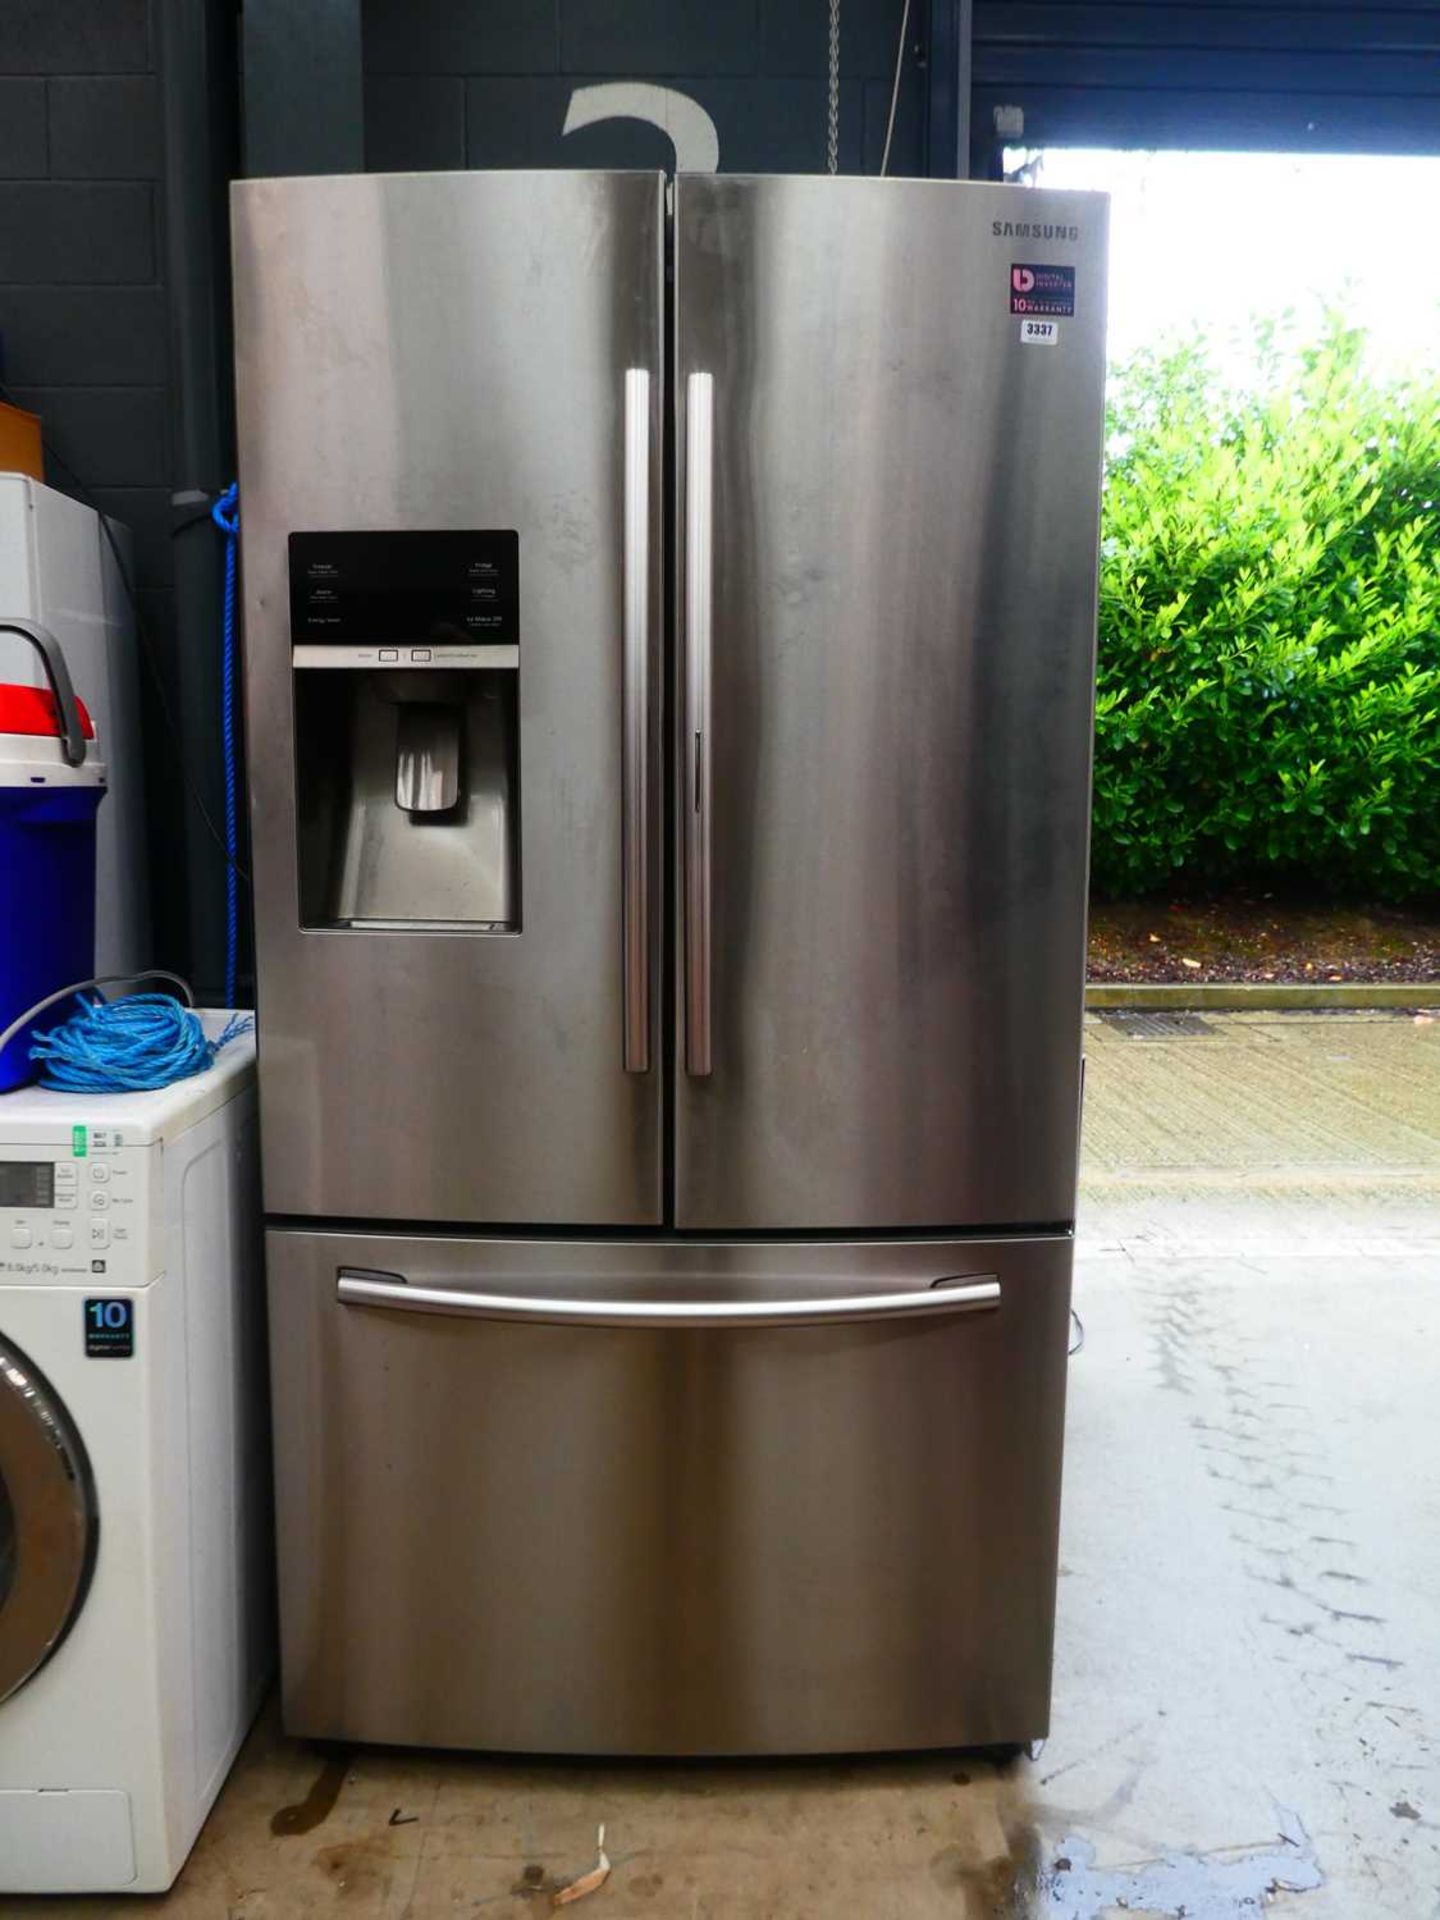 Samsung triple door American style fridge freezer